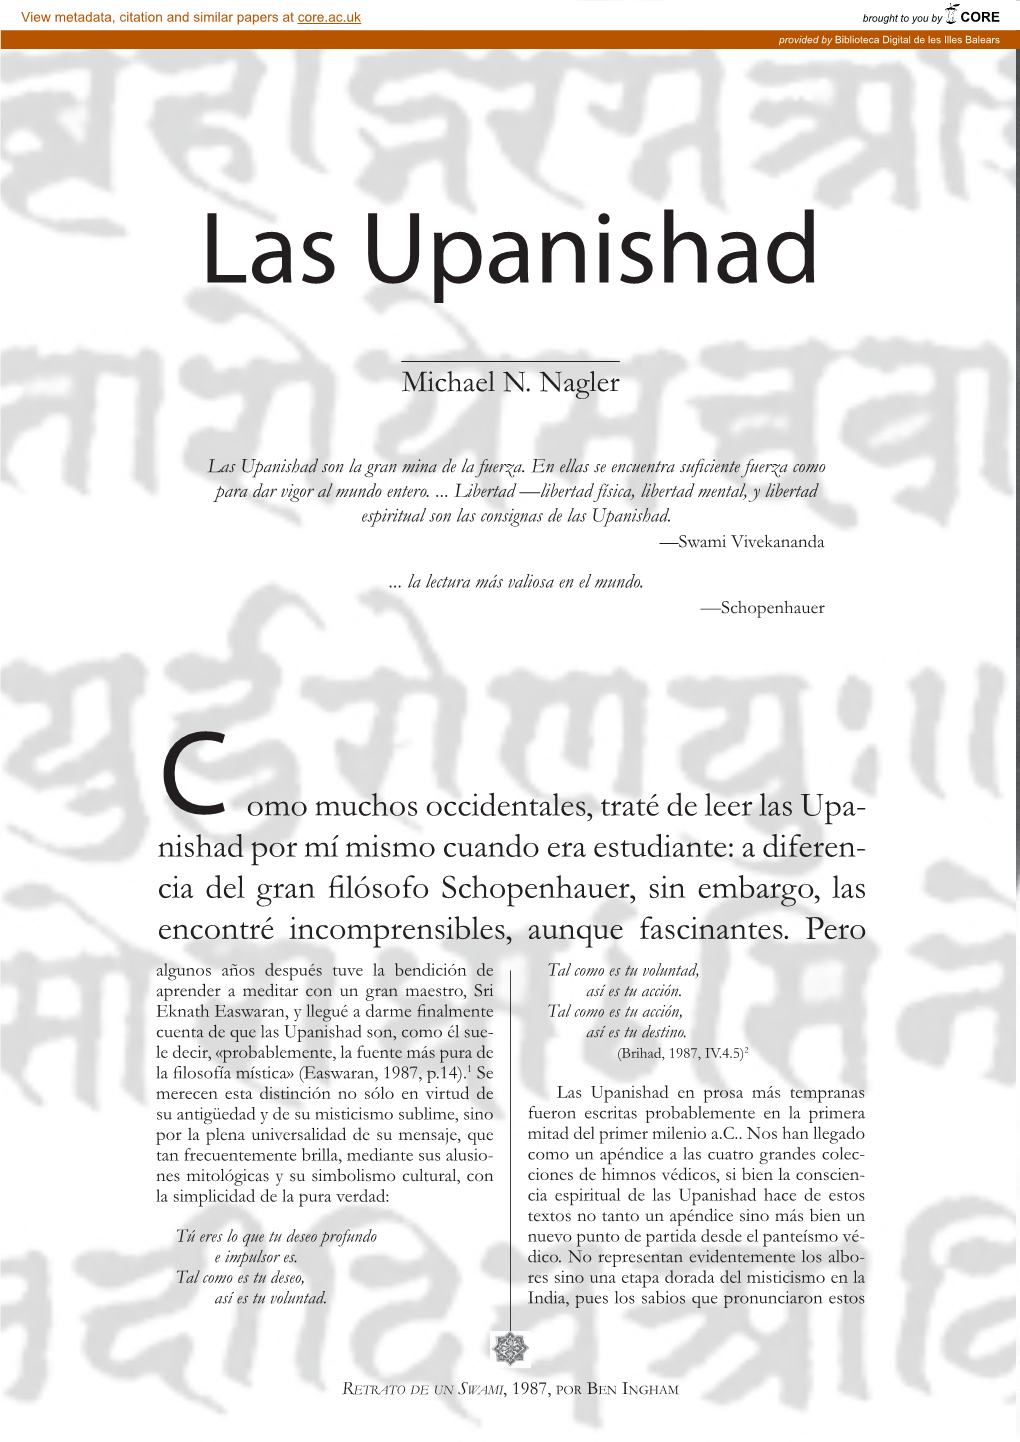 Las Upanishad